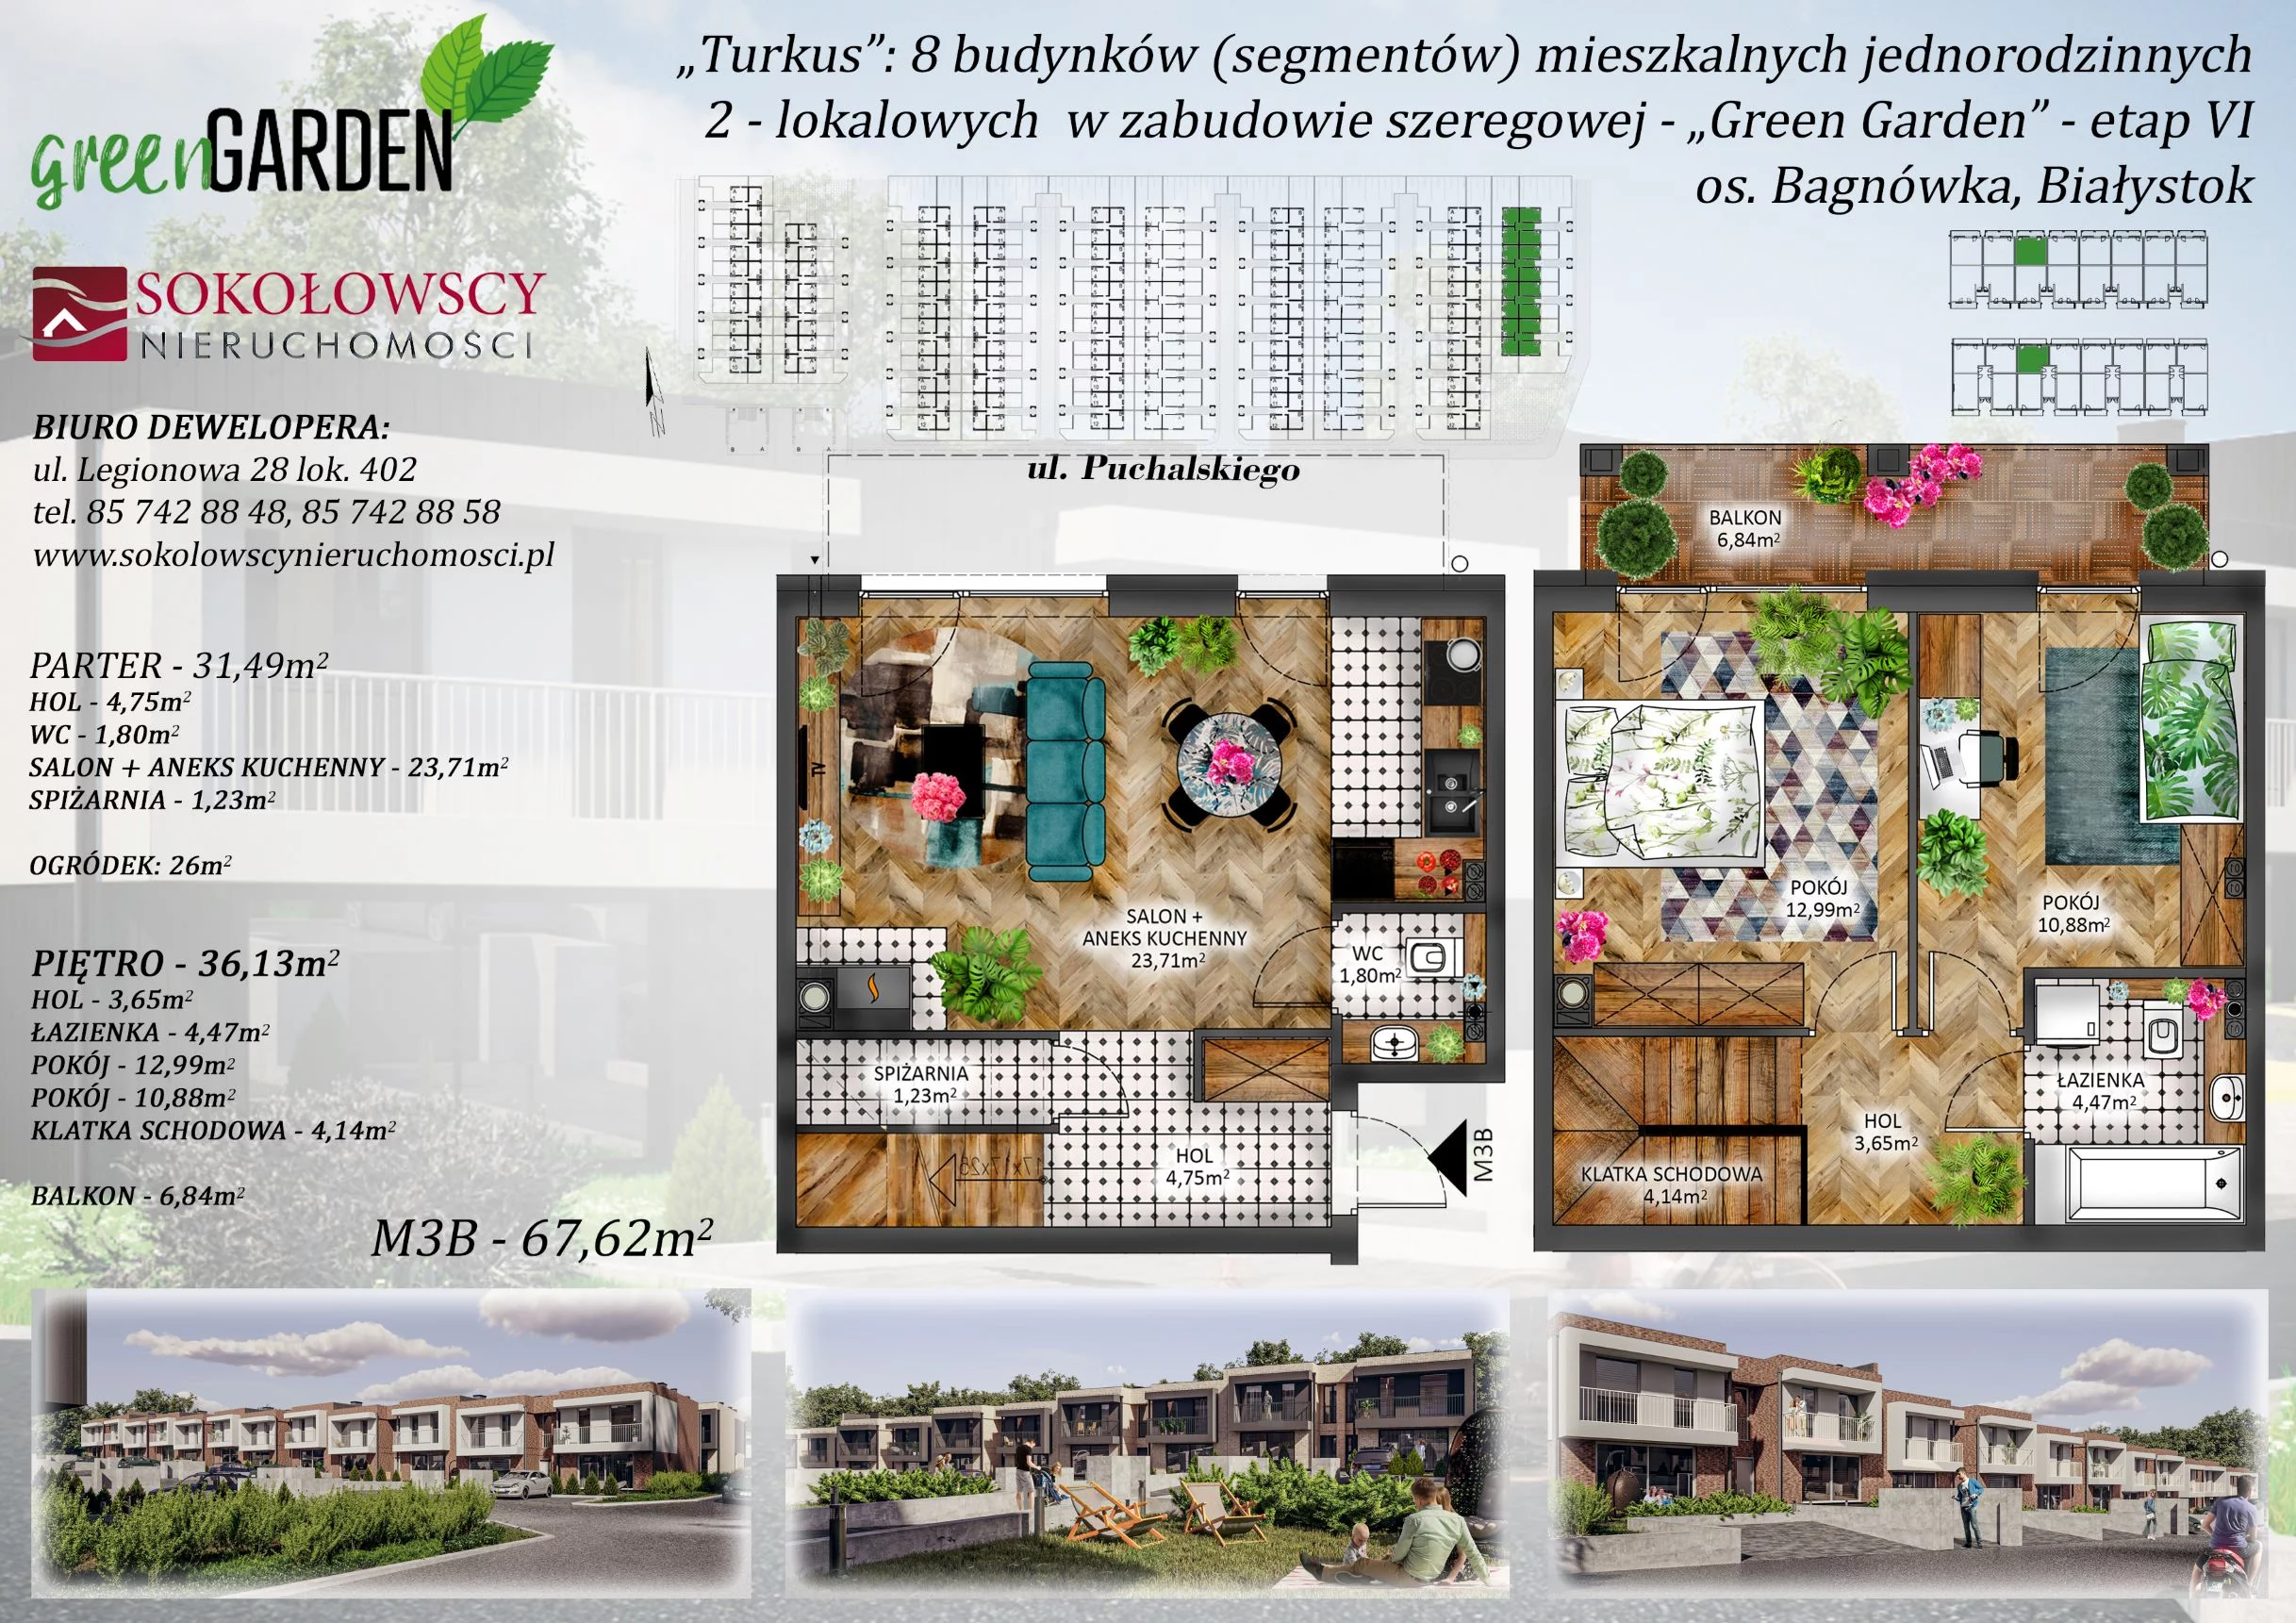 Mieszkanie 67,62 m², parter, oferta nr 3B, Green Garden etap 6, Białystok, Bagnówka, ul. Karola Puchalskiego